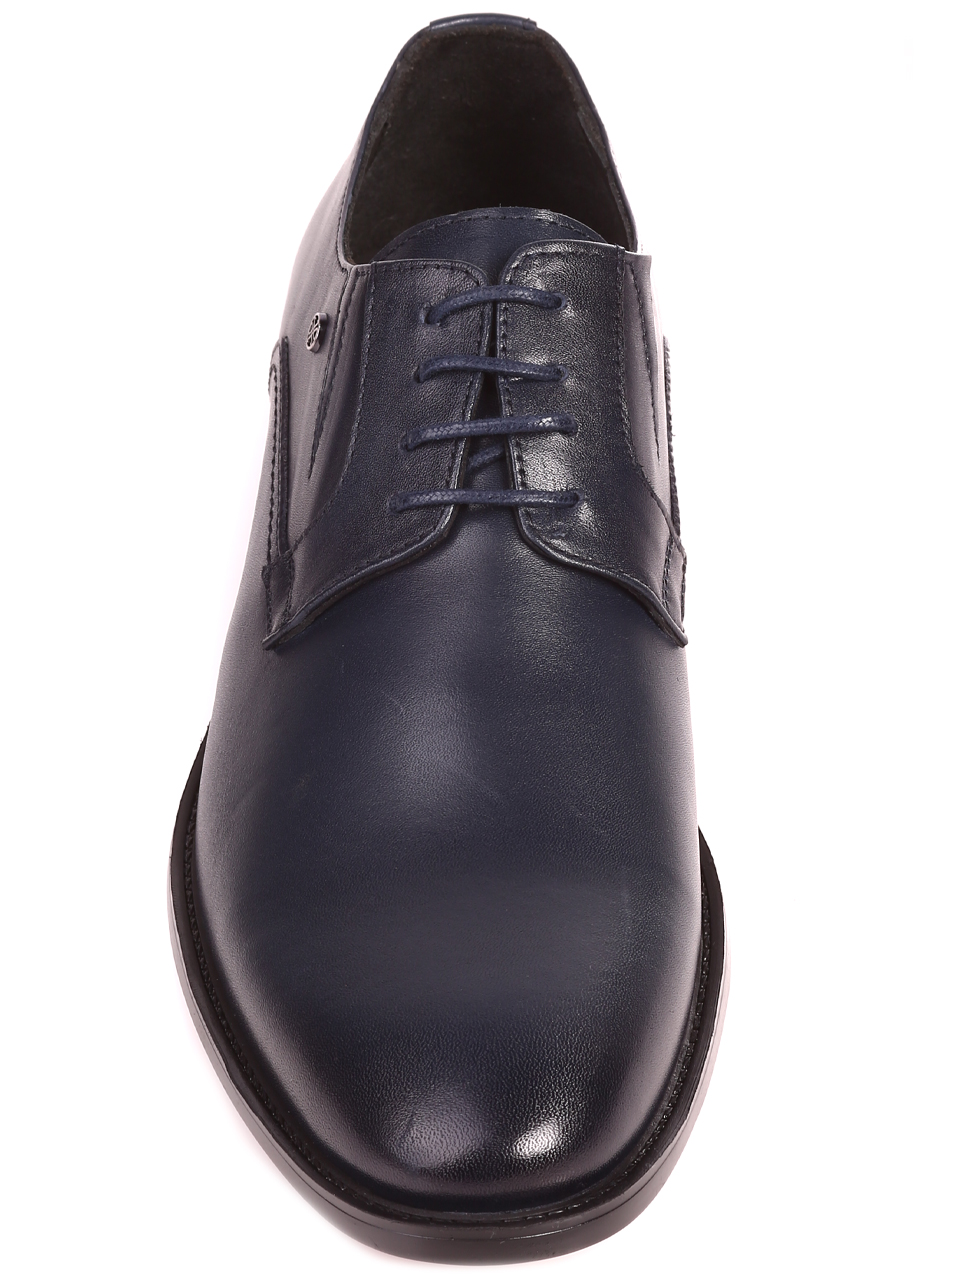 Елегантни мъжки обувки от естествена кожа в цвят нави 153-5844 navy L-1